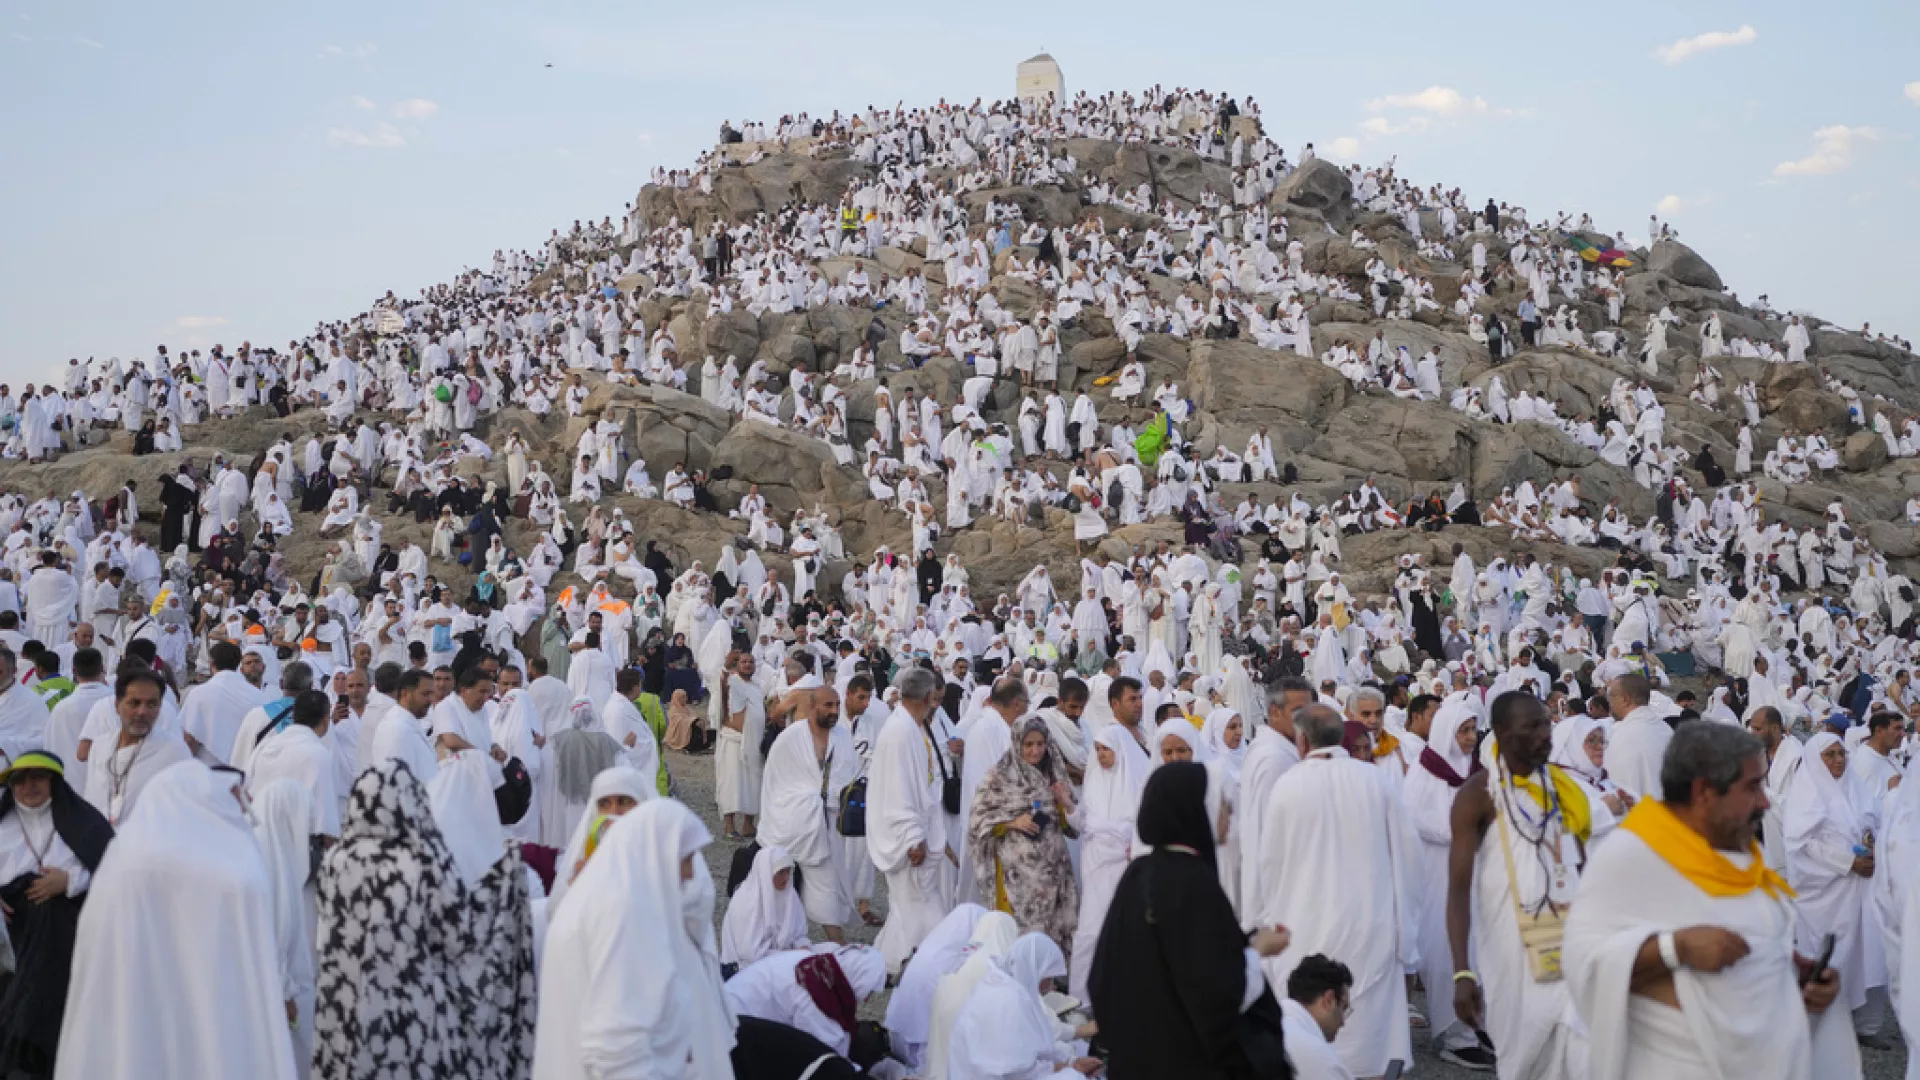 Mbi dy milionë pelegrinë në Mekë për të kryer haxhin